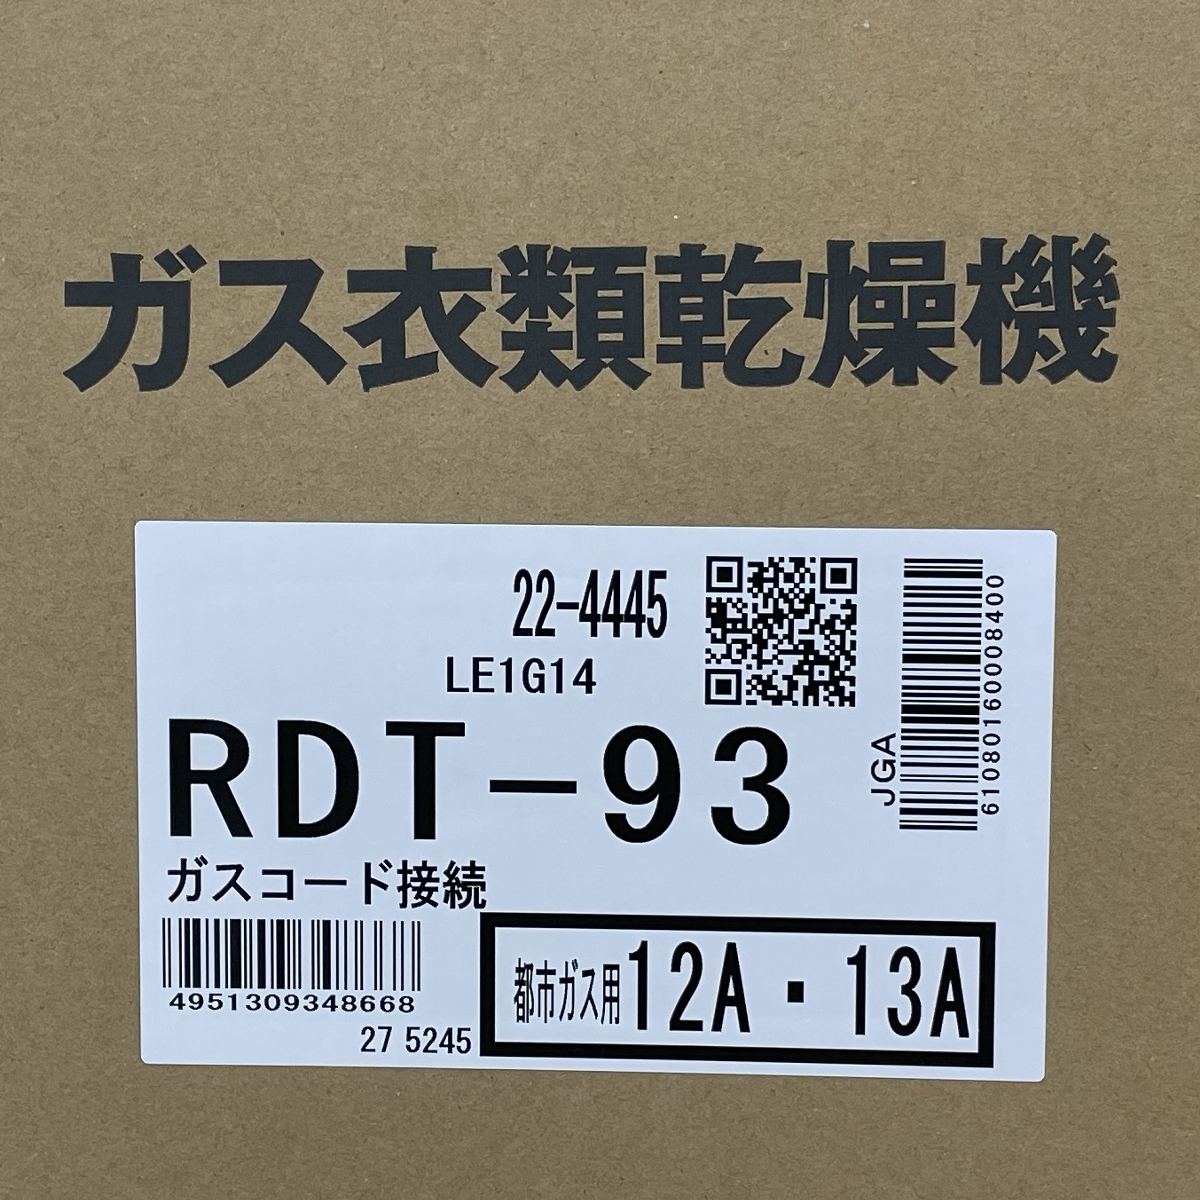 [ гарантия работы ]Rinnai RDT-93. futoshi kun газ сушильная машина сухой емкость 9kg город газовый Rinnai бытовая техника не использовался приятный N8795912